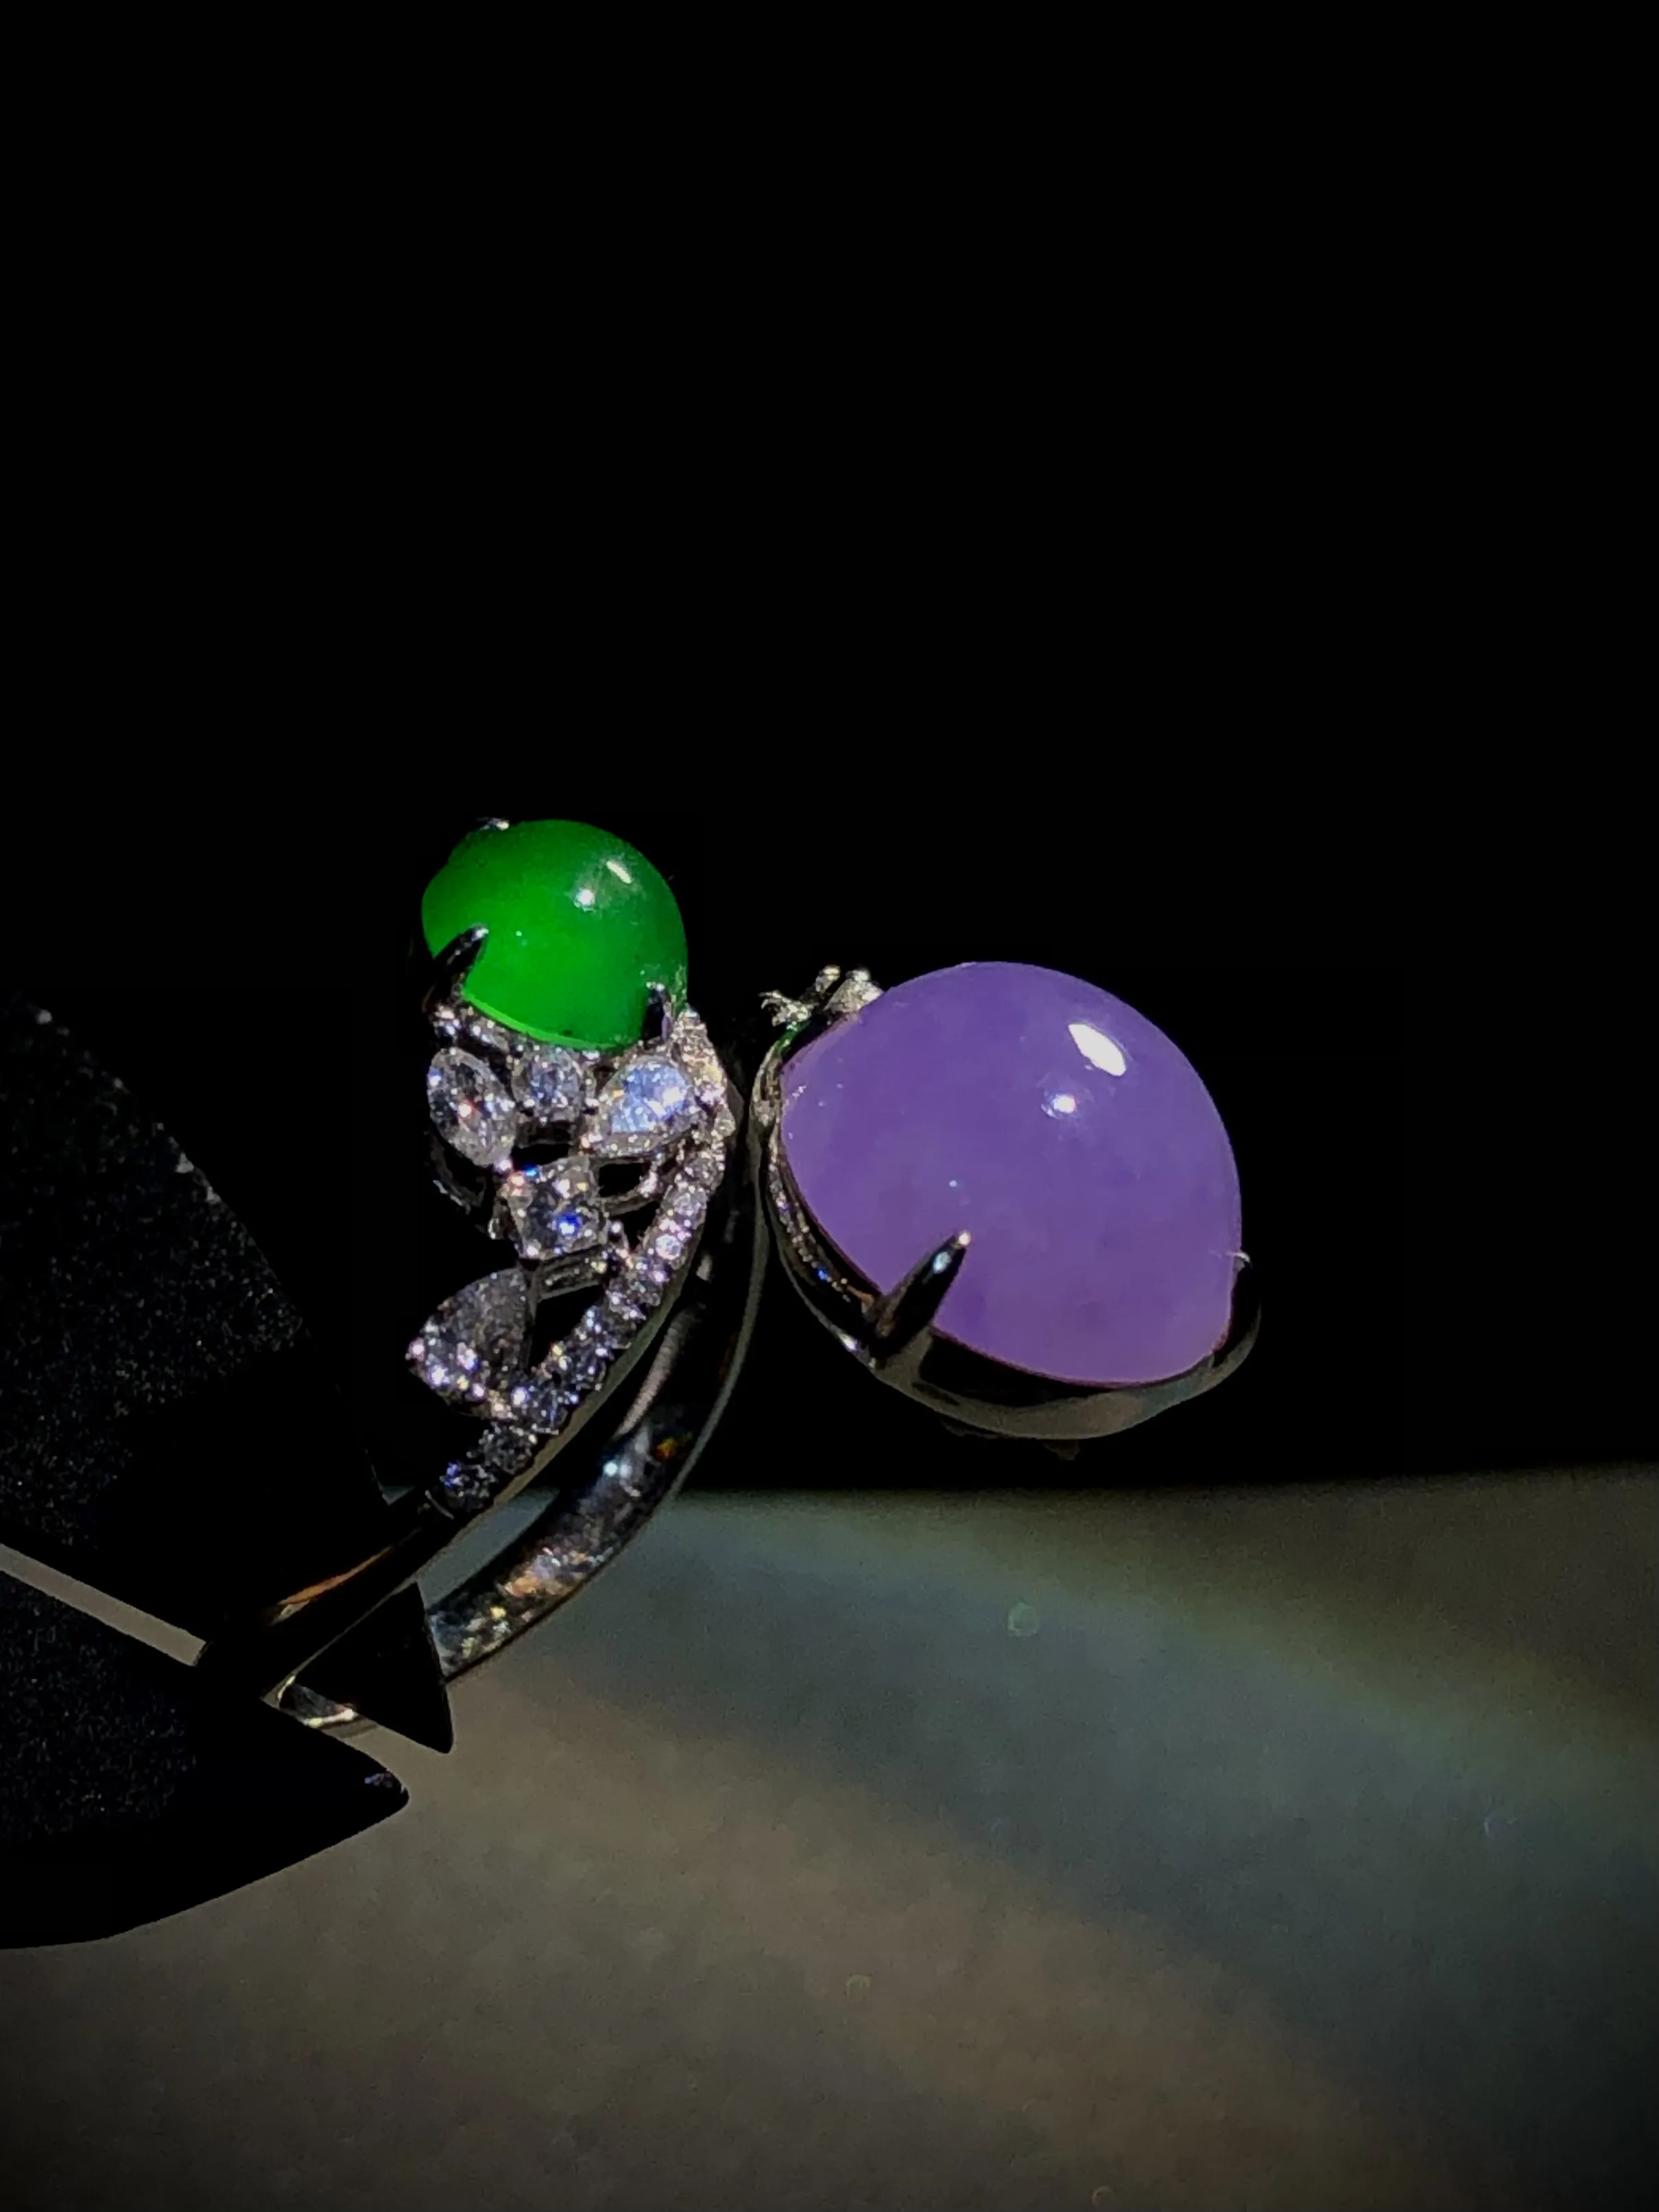 蛋面戒指，紫裸石10.6-10-6mm，
绿裸石6.2-5.6-3.5mm，
13#，18K金，南非